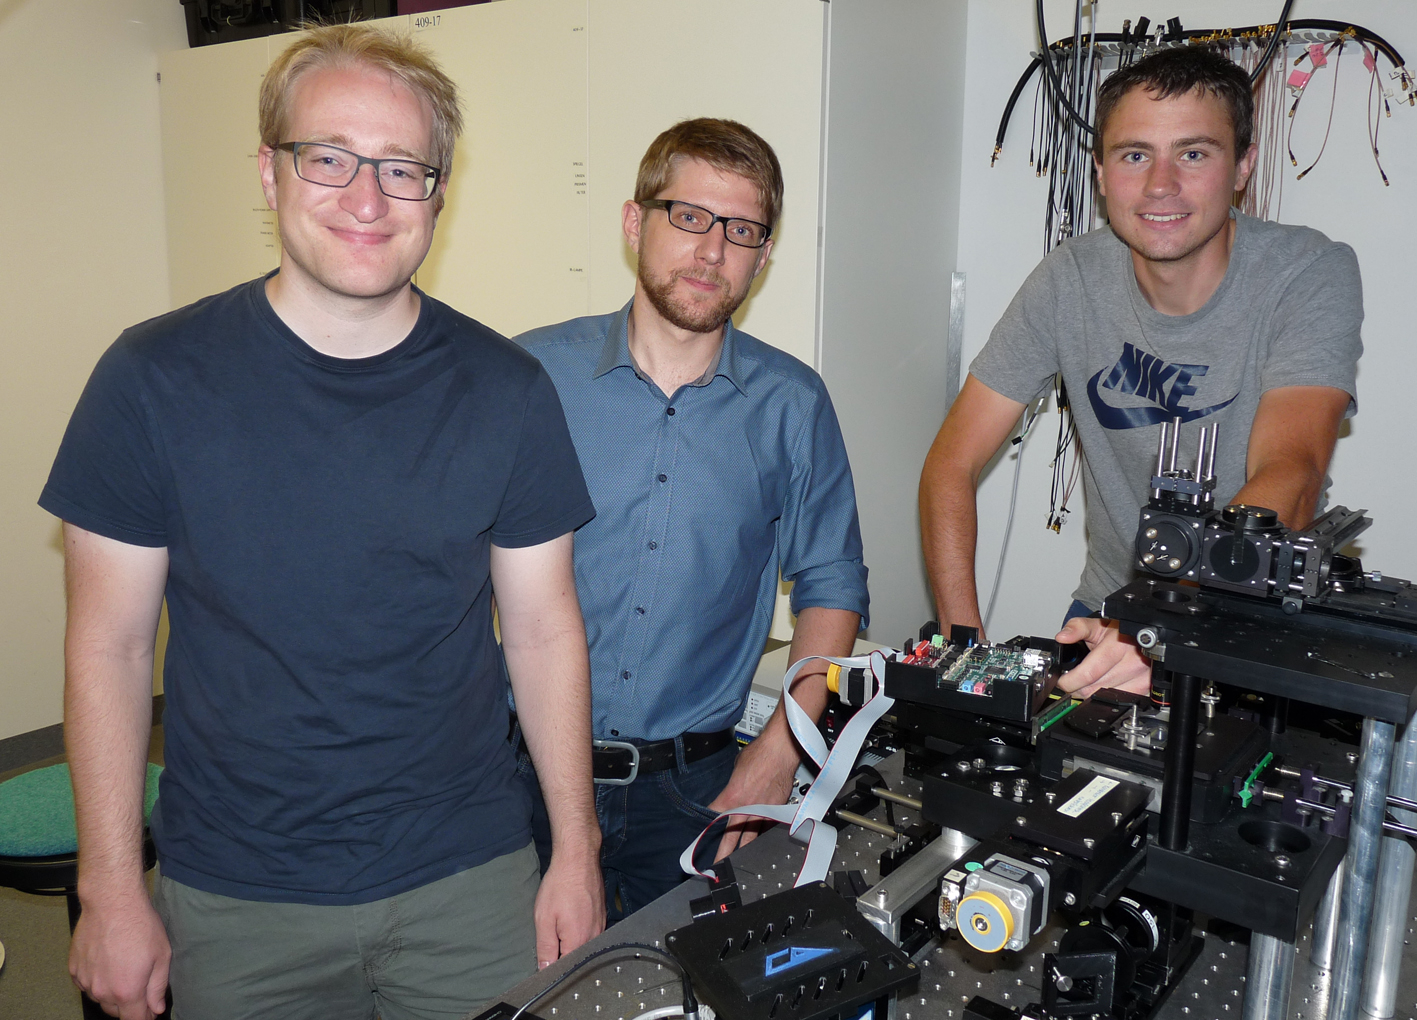 Gruppenfoto des Entwicklerteams (von links nach rechts): Jonas Pfeil, DanielGeiger und Tobias Neckernuß. Rechts im Vordergrund ist eine optischeMessvorrichtung zu sehen. Foto: Daniel Geiger